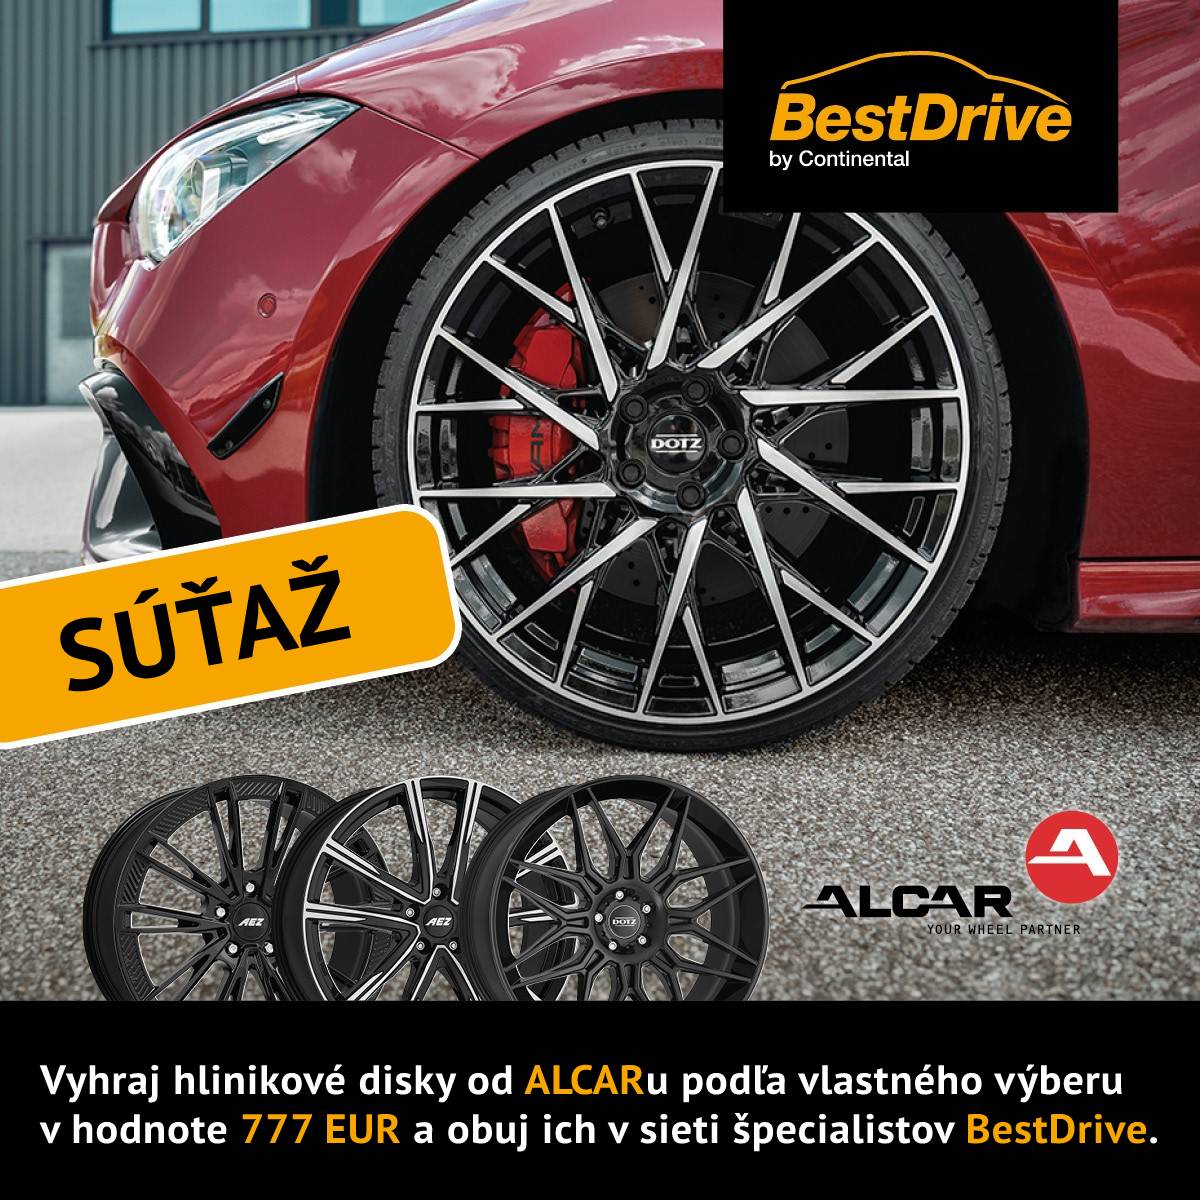 Vyhraj hliníkové disky od Alcar v hodnote 777 EUR